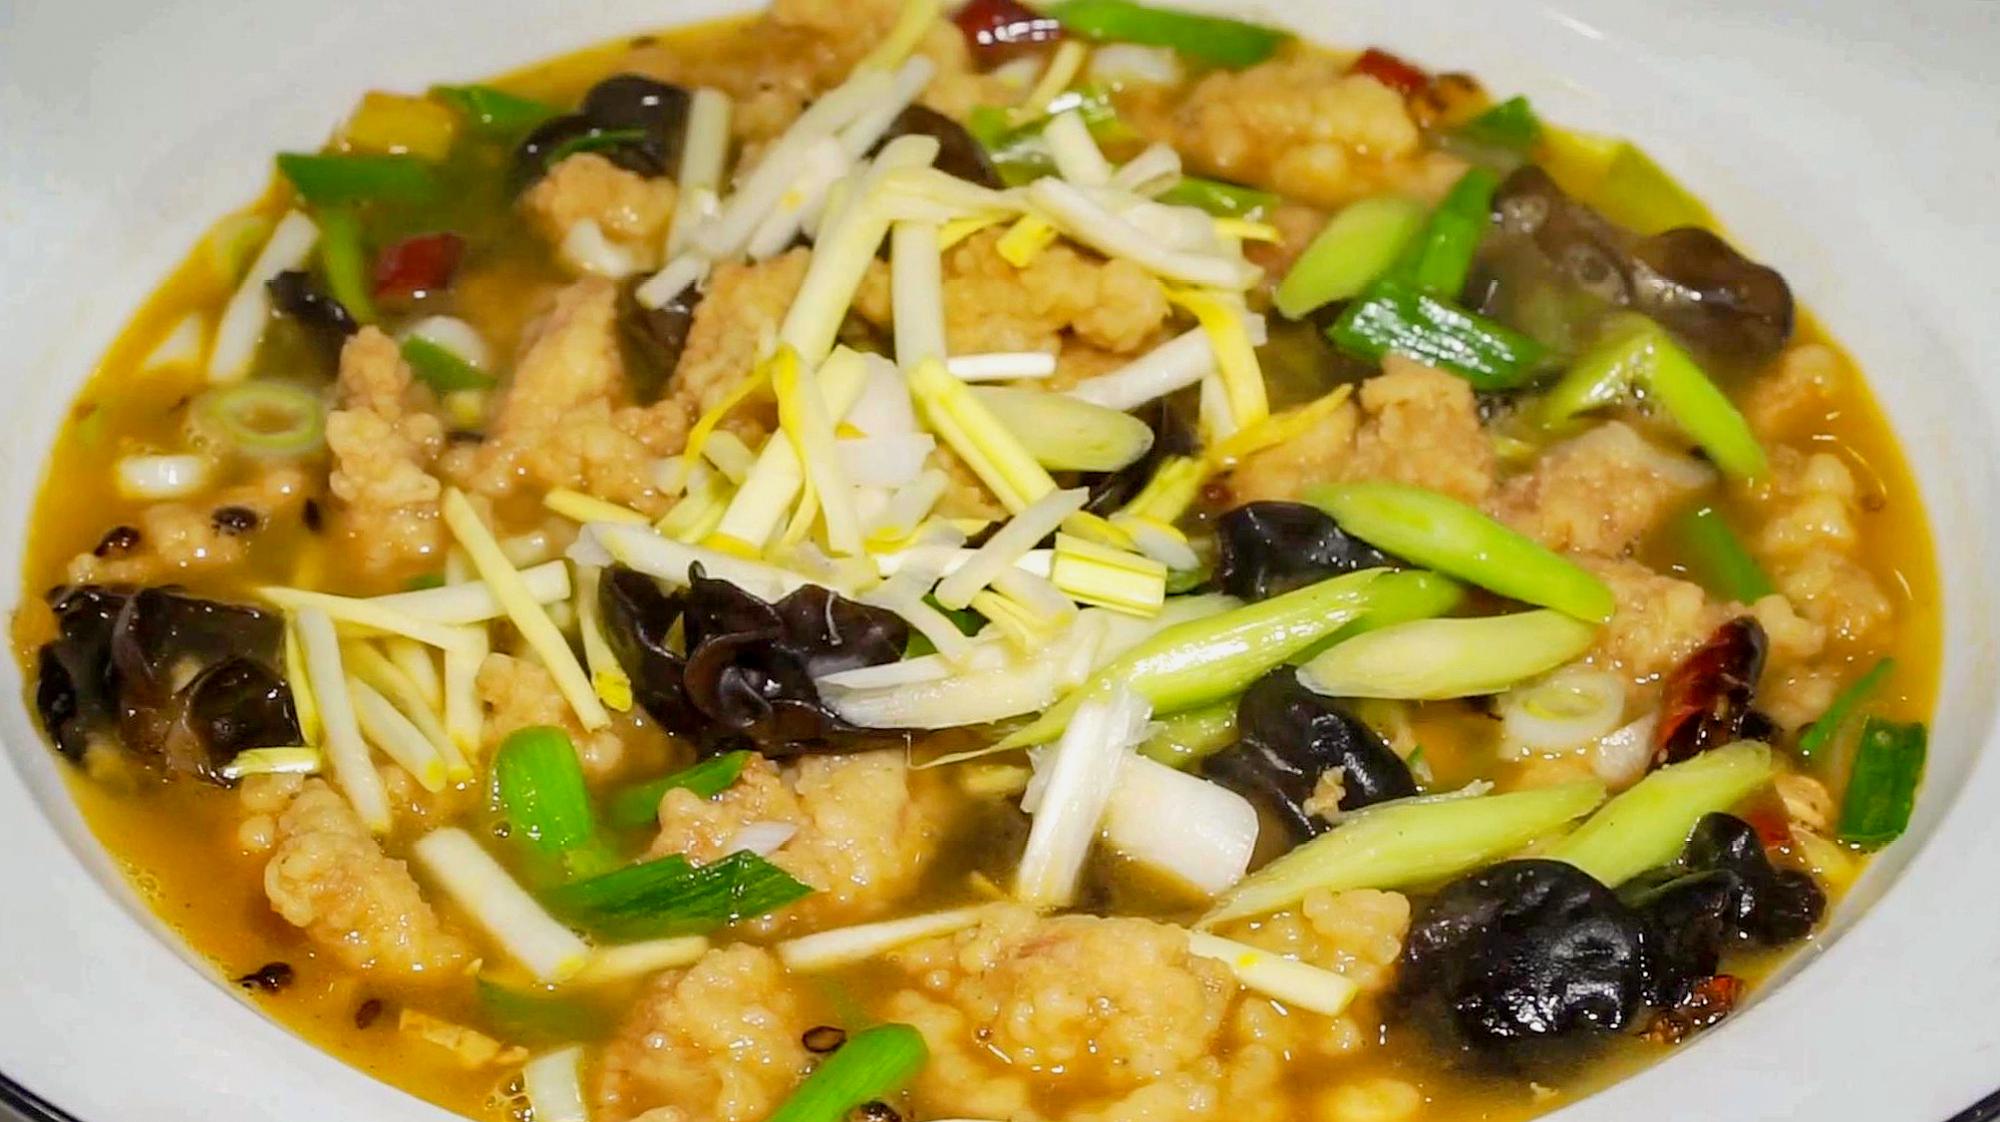 大厨教你做河南菜烩酥肉,油而不腻,做法简单,最受欢迎的家常菜